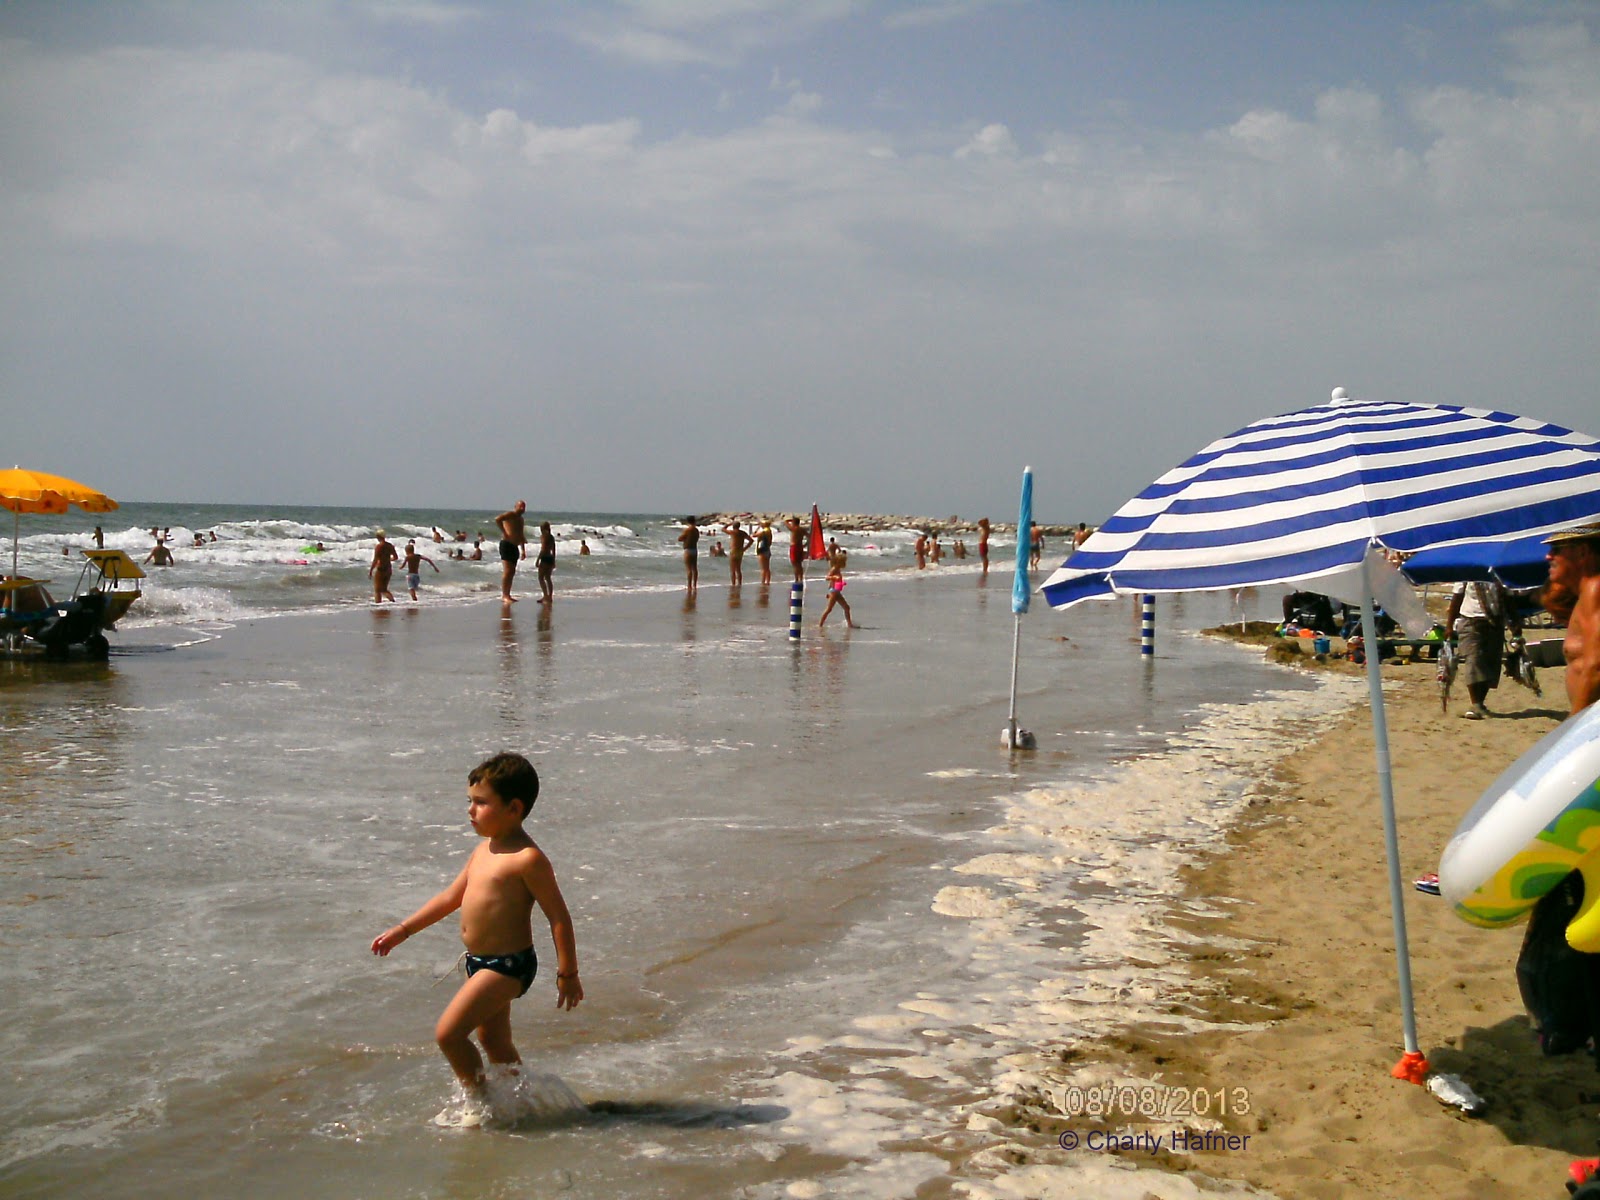 Fotografie cu Cavallino beach II cu nivelul de curățenie înalt